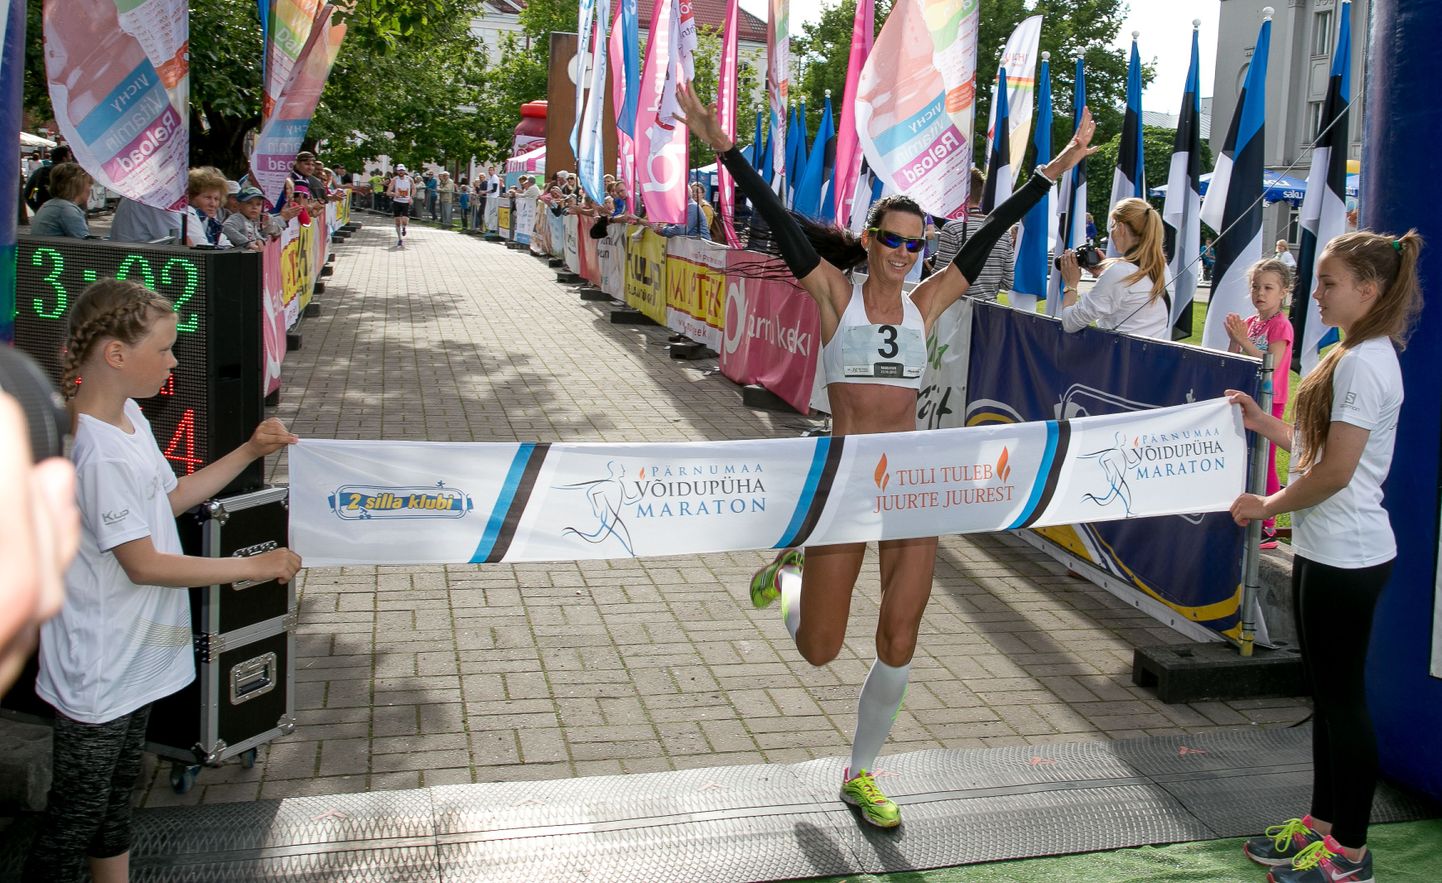 Võidupüha maratoniga tähistatakse kahe aastapärast Eesti Vabariigi aastapäeva.